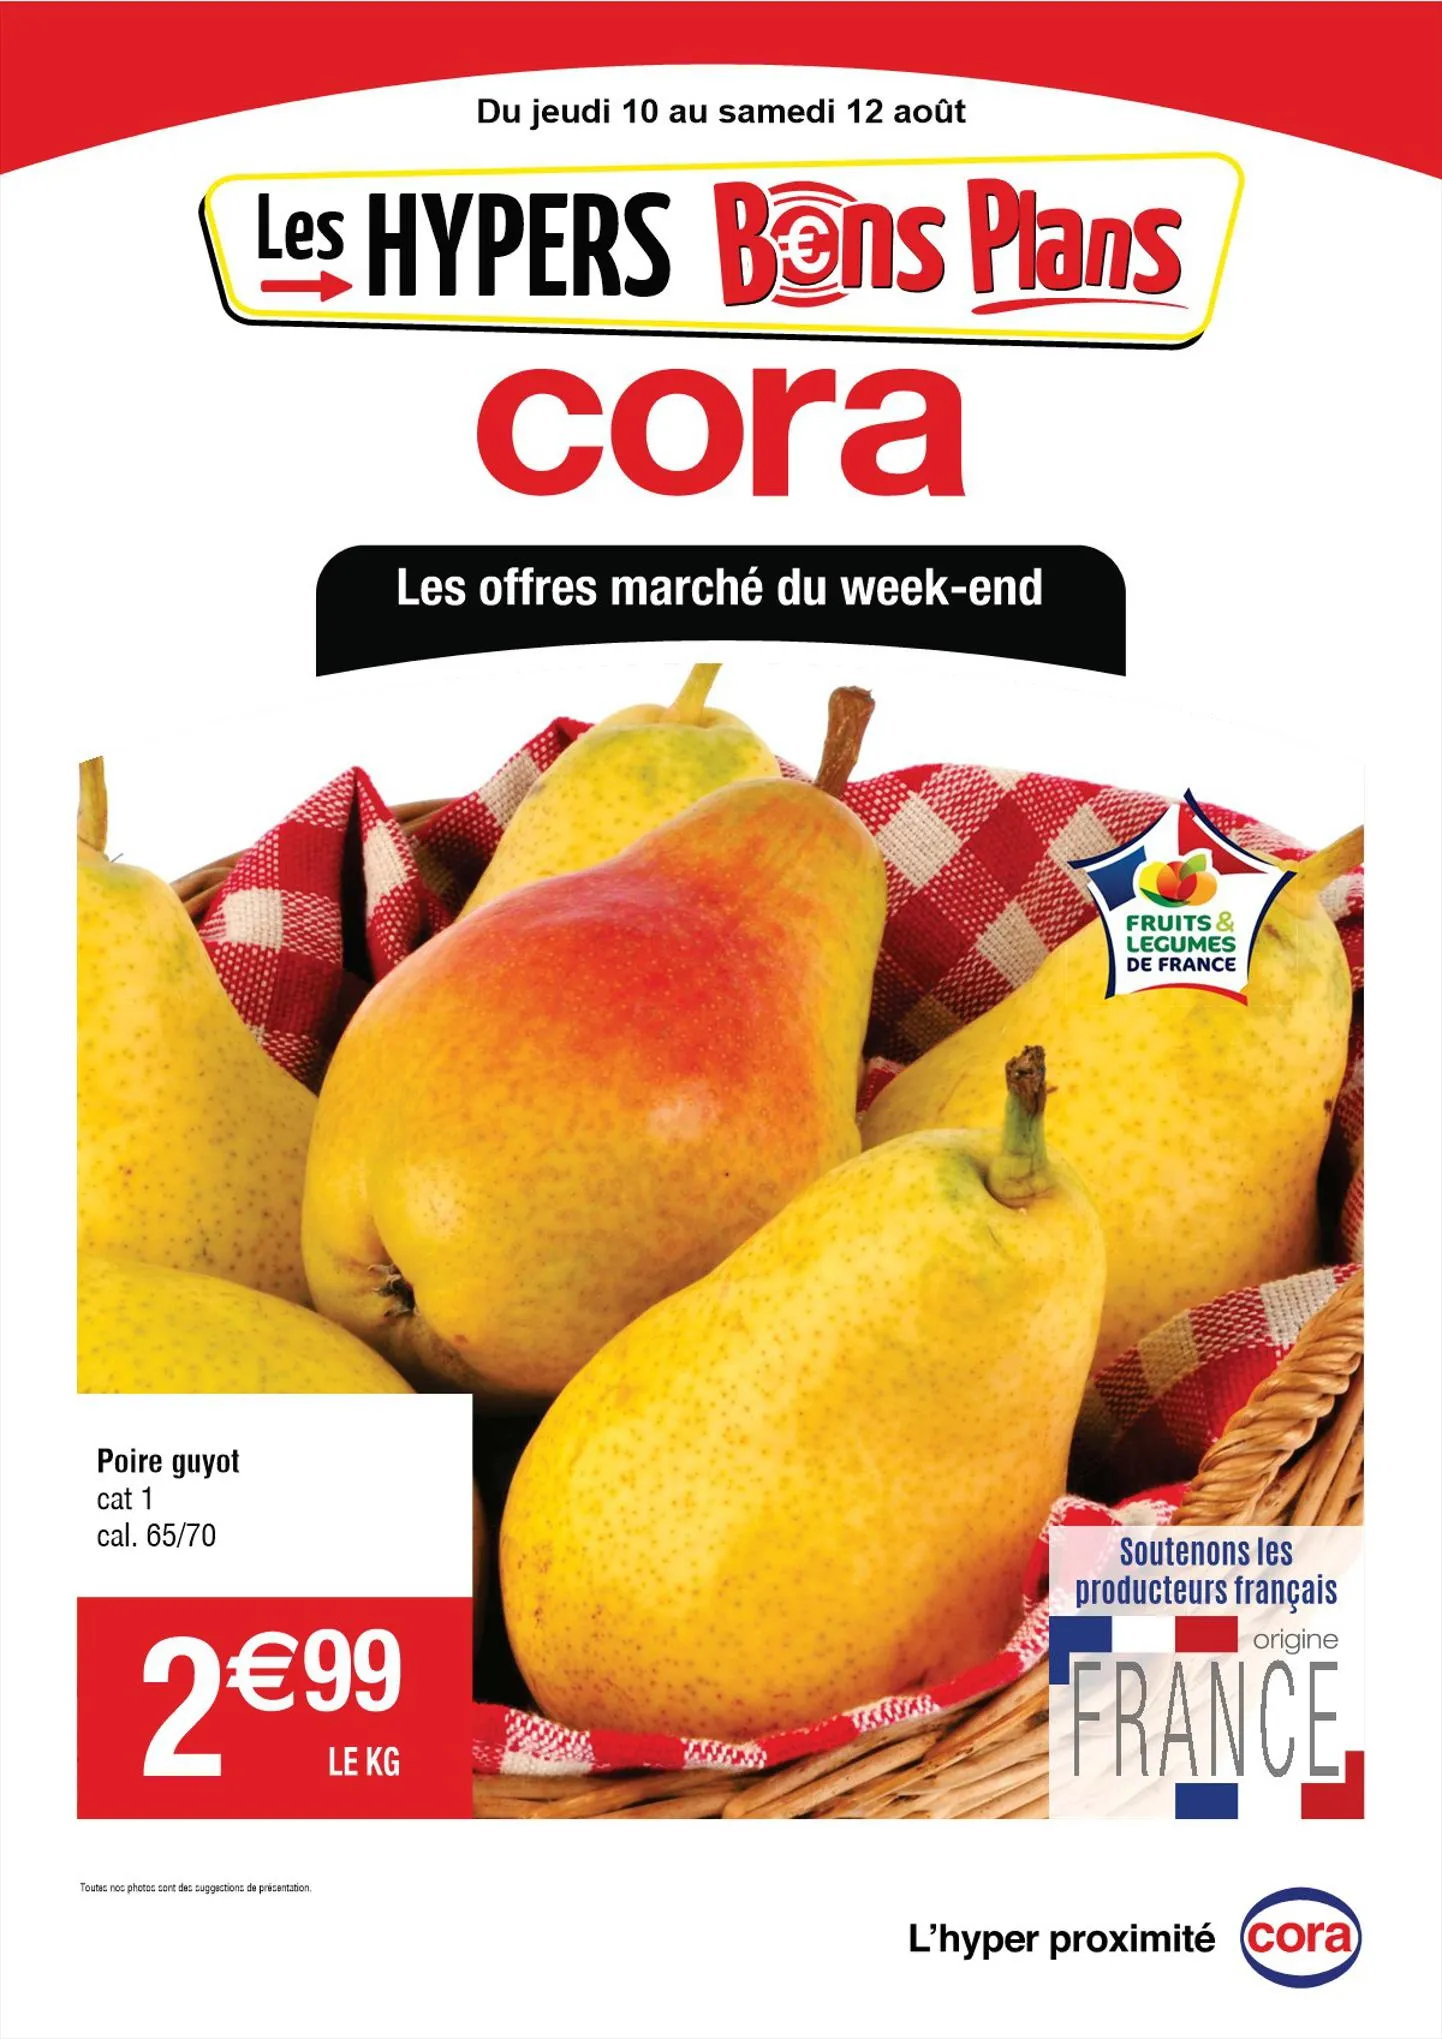 Catalogue Les offres marché du week-end, page 00001